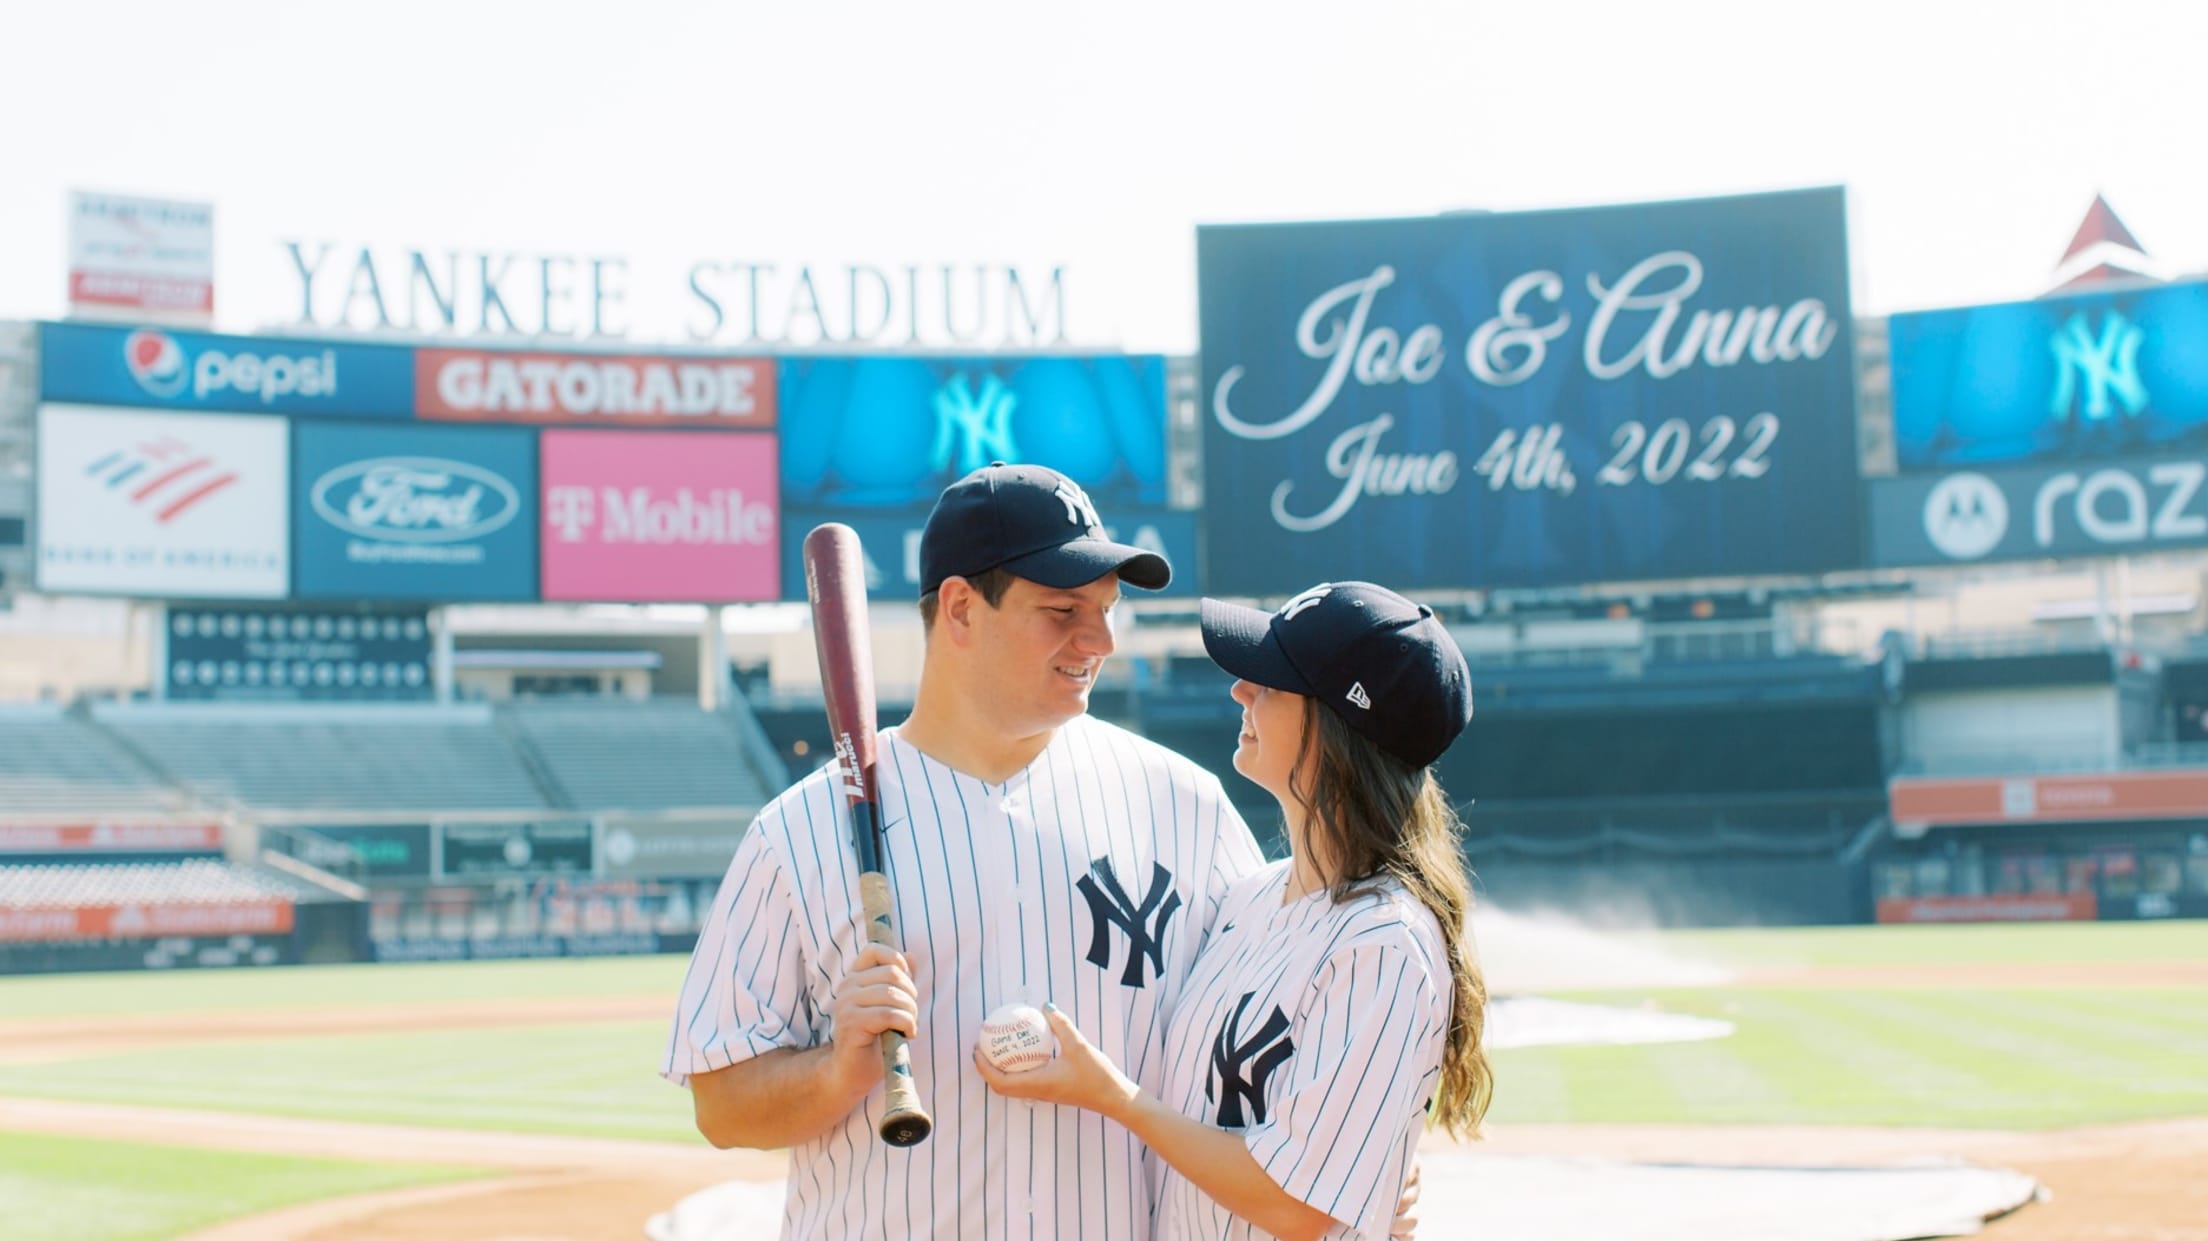 Fond memories of Yankee Stadium